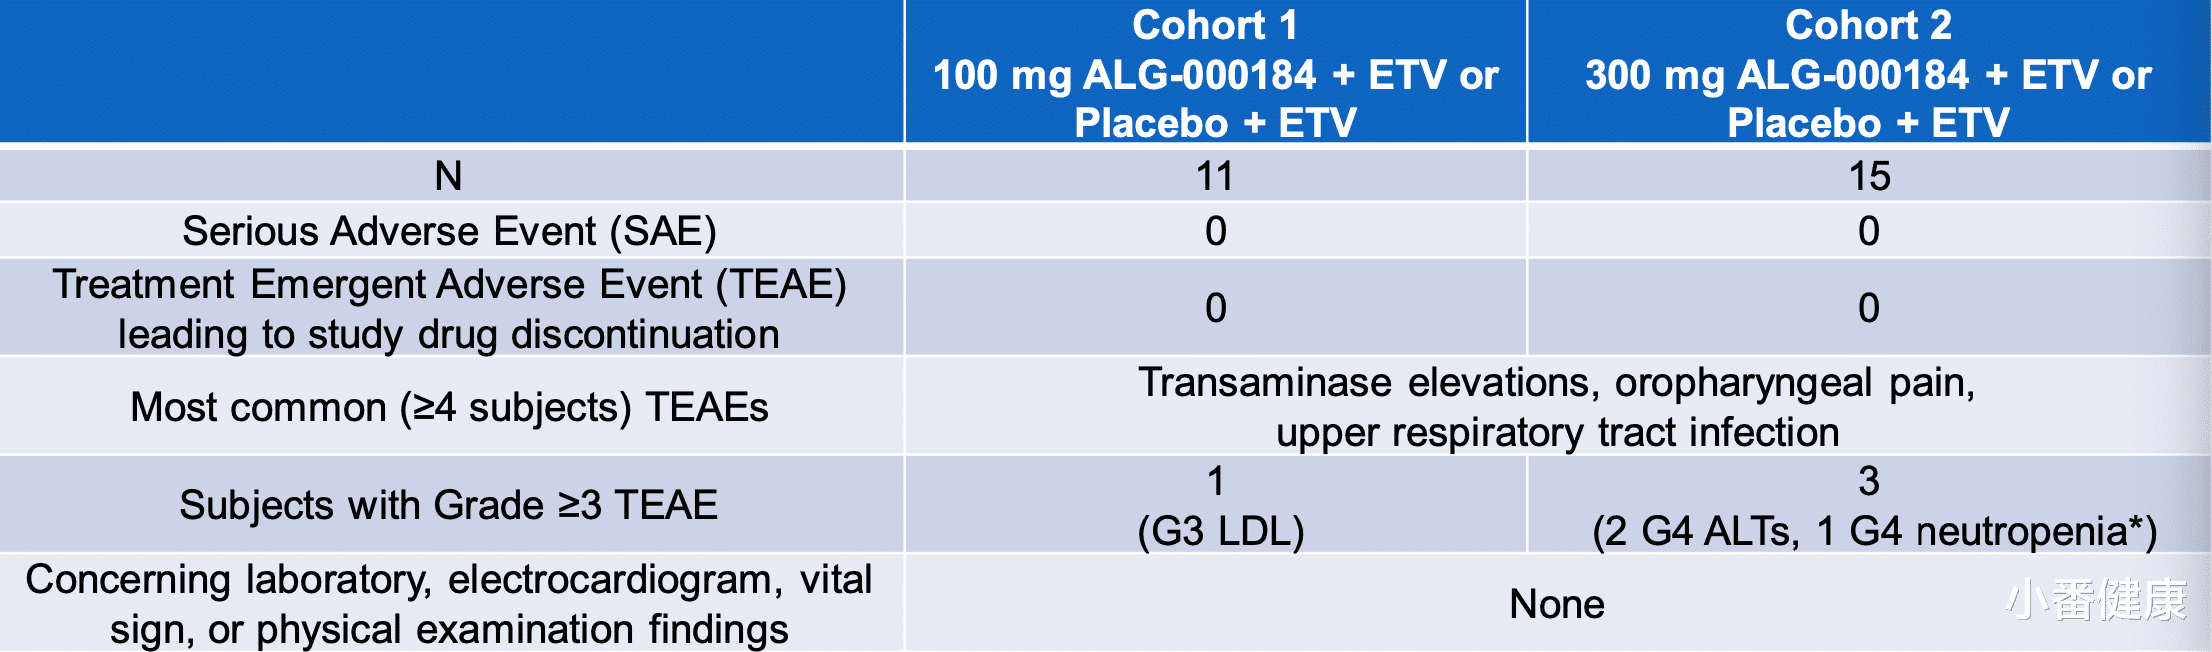 乙肝|乙肝在研新药ALG-000184，1期超12周组合ETV，完整试验数据